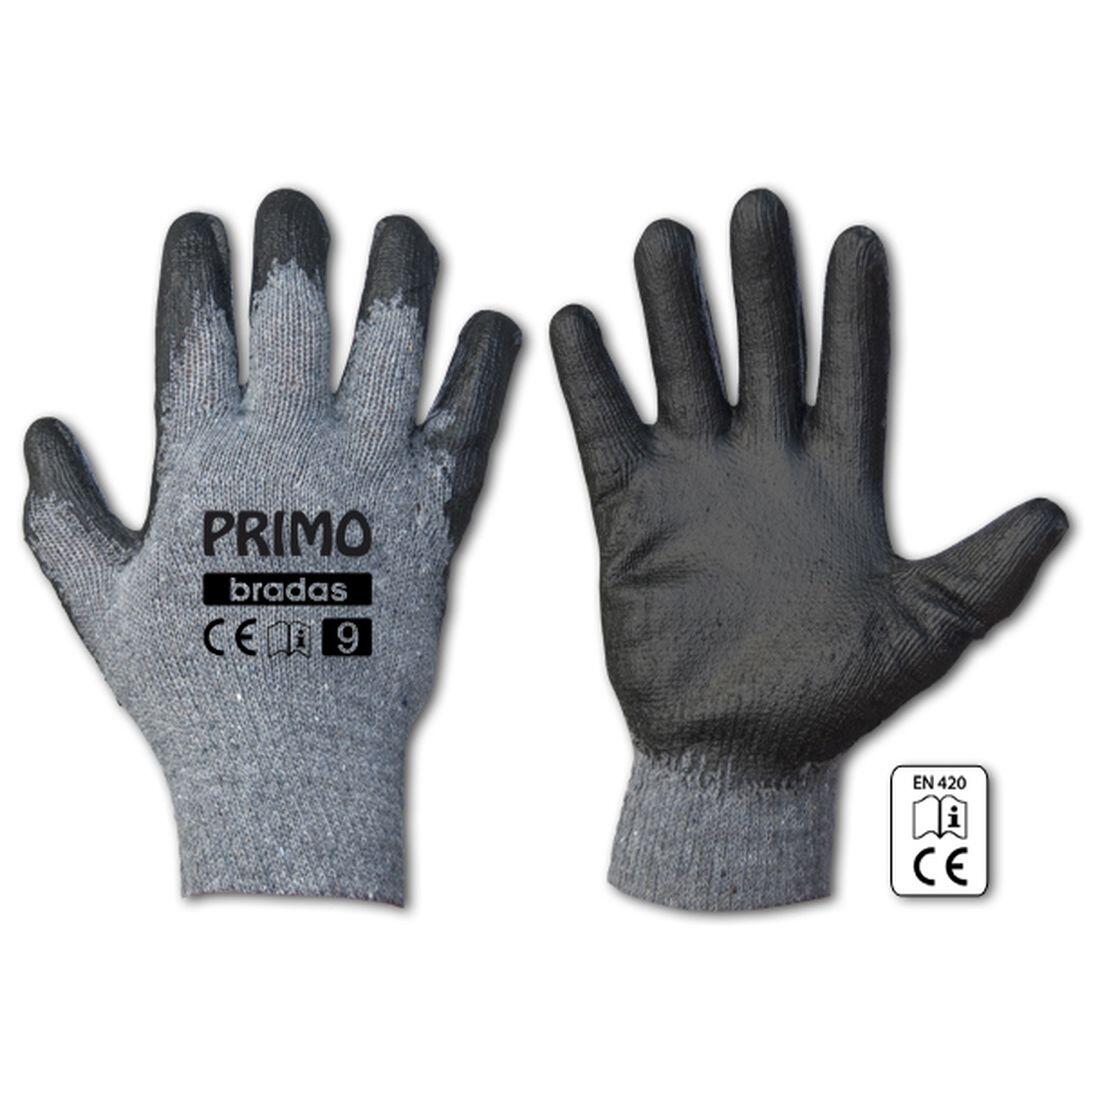 rukavice PRIMO latex 11 0.07 Kg MAXMIX Sklad14 715685 221